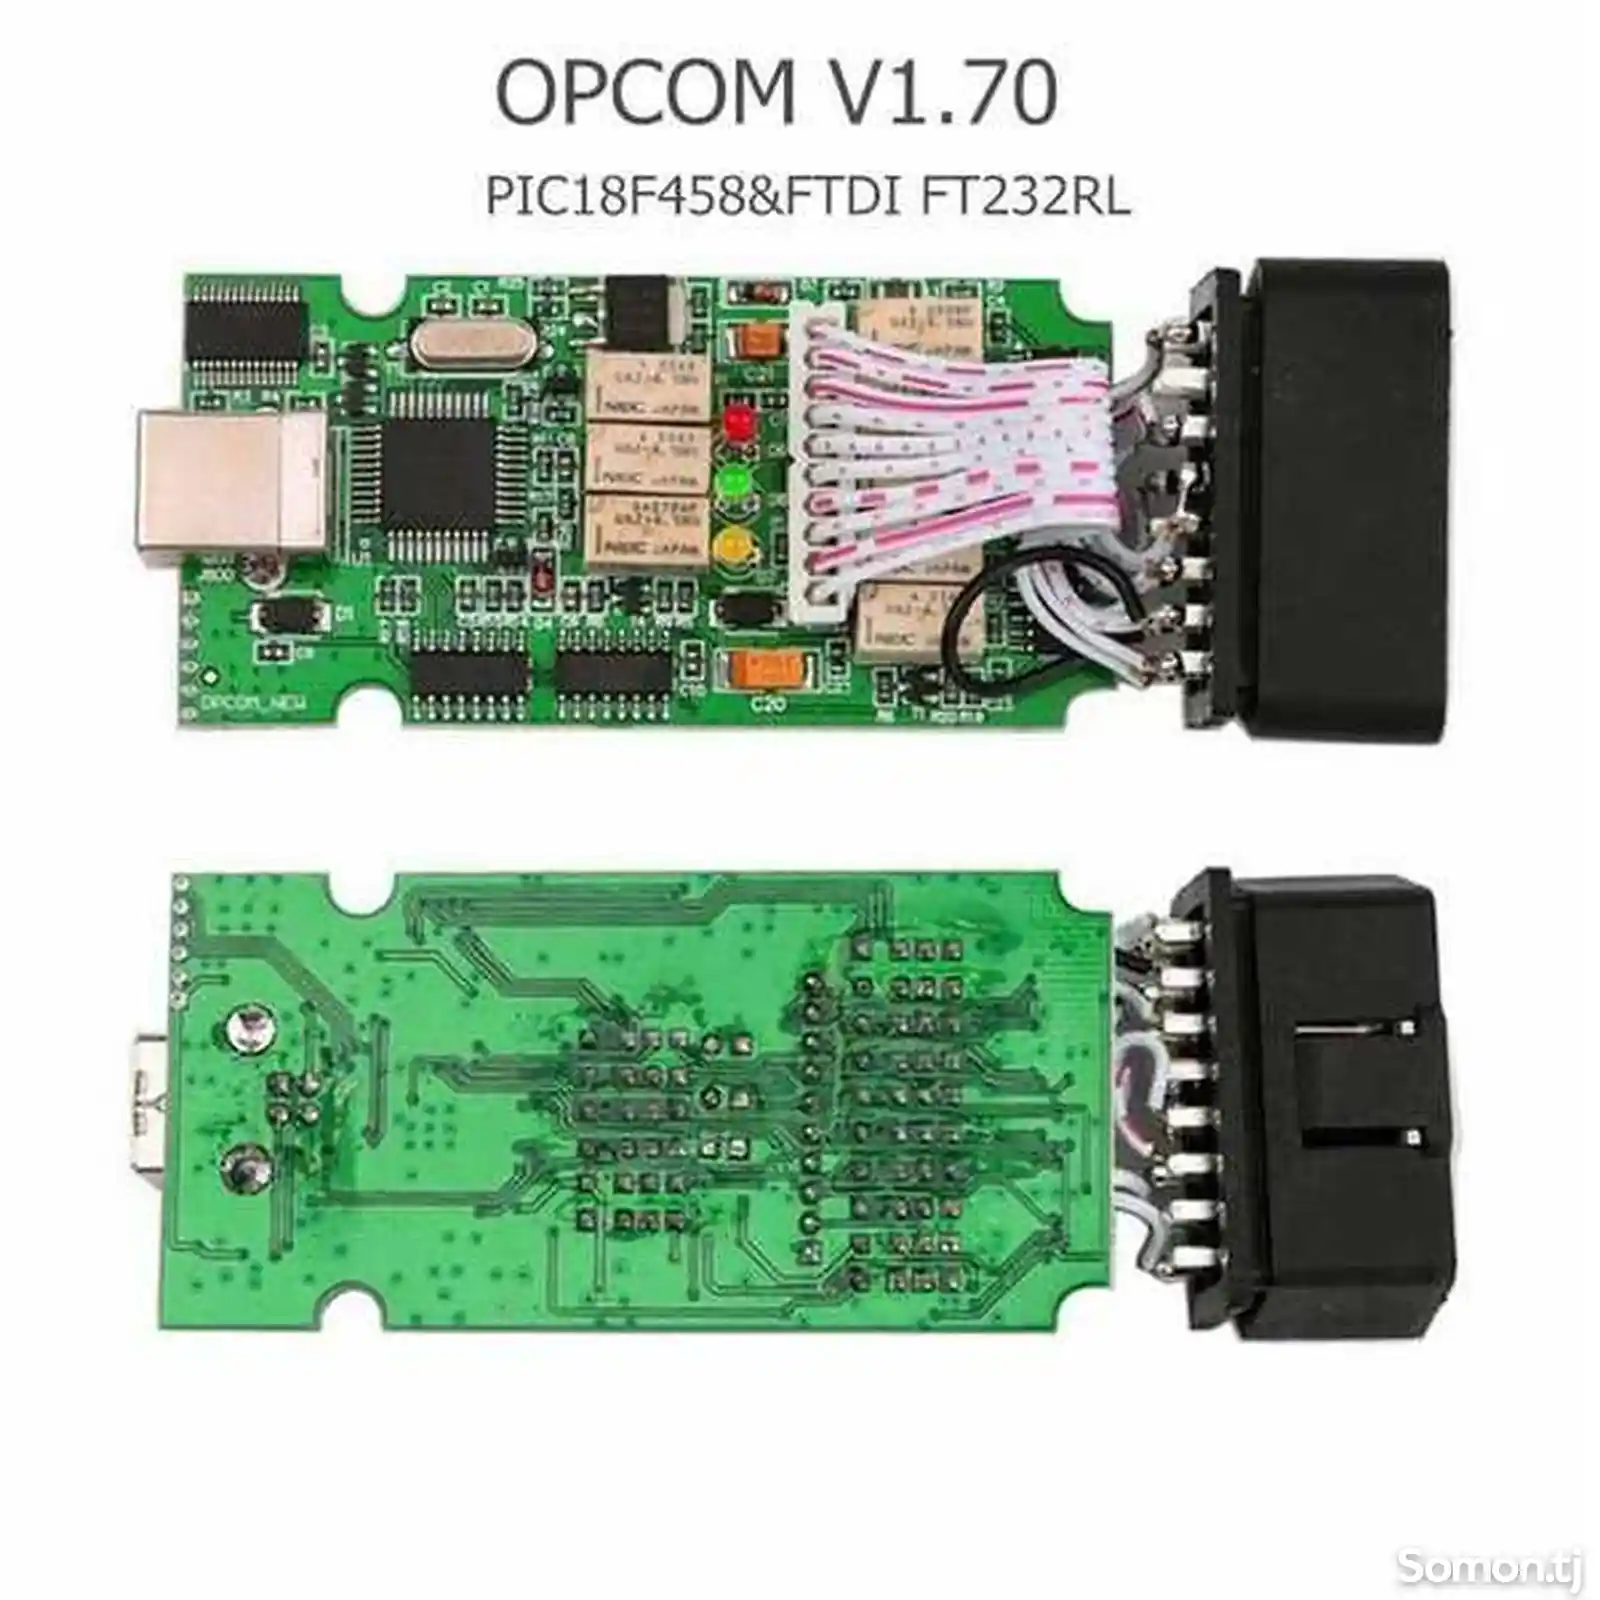 Адаптер Op-com v1.70 для диагностики Opel-3